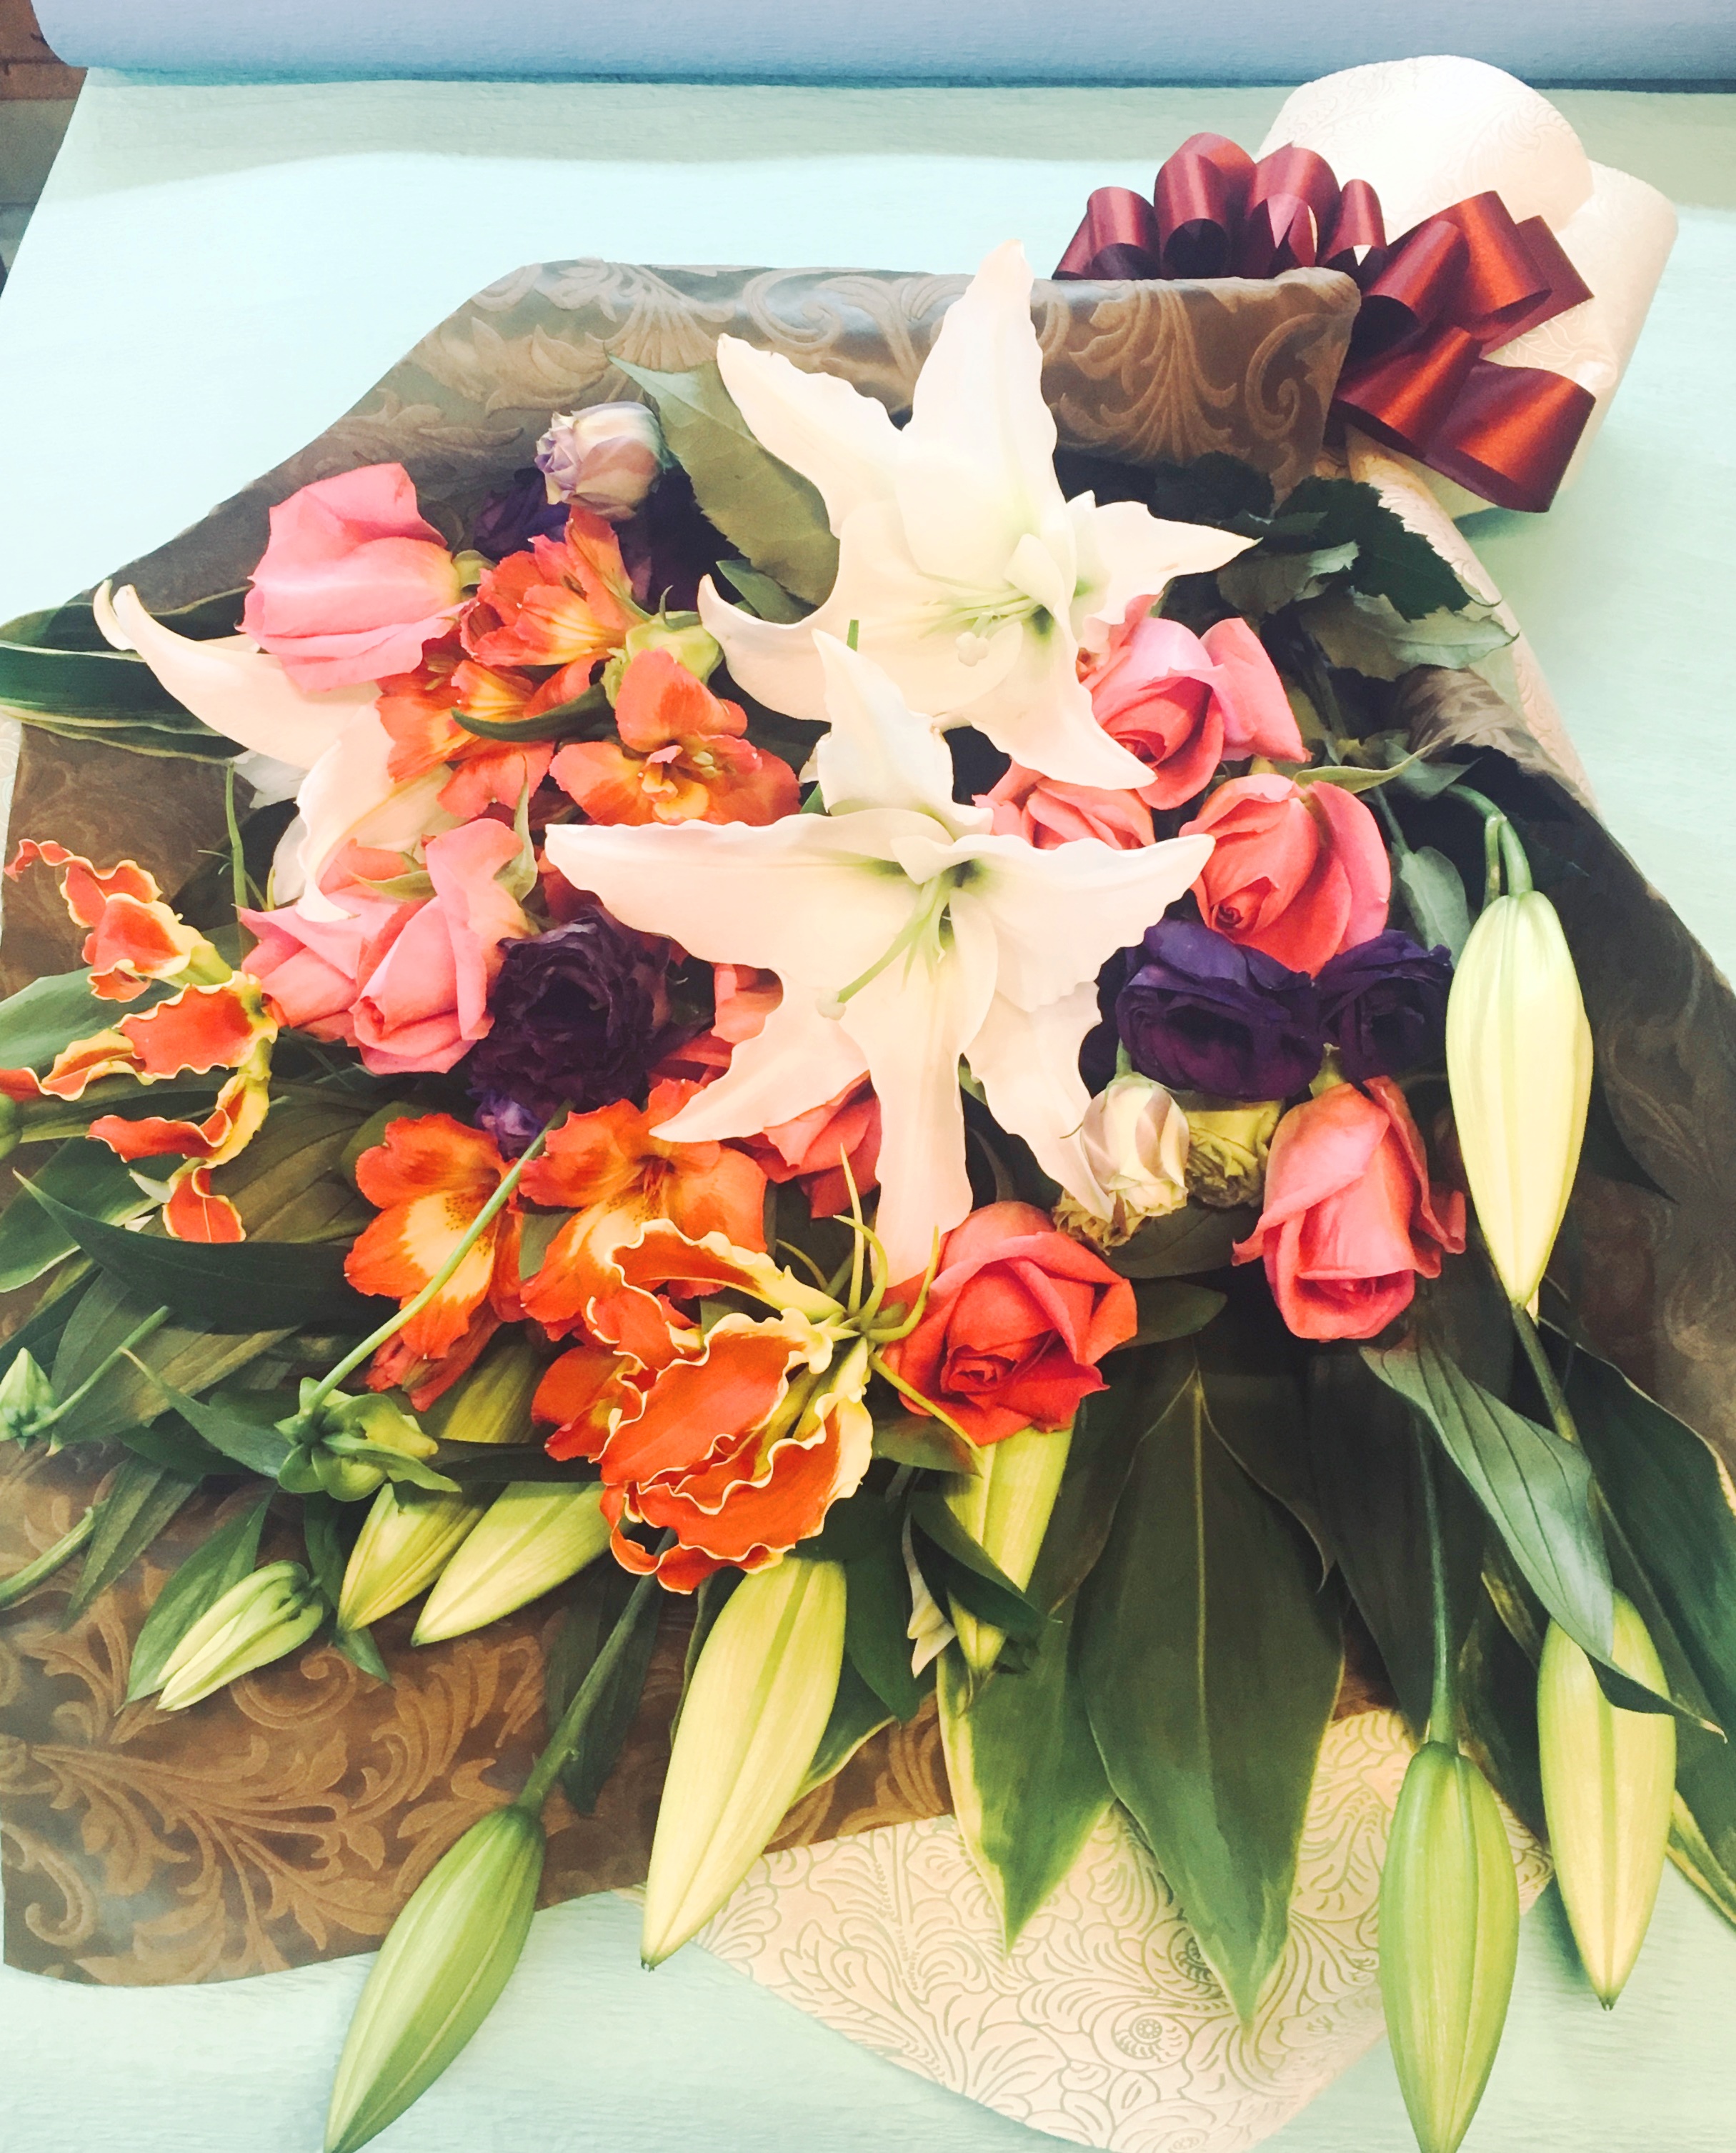 【お花納品事例15】神奈川県川崎市幸区に御供のお花を納品しました。